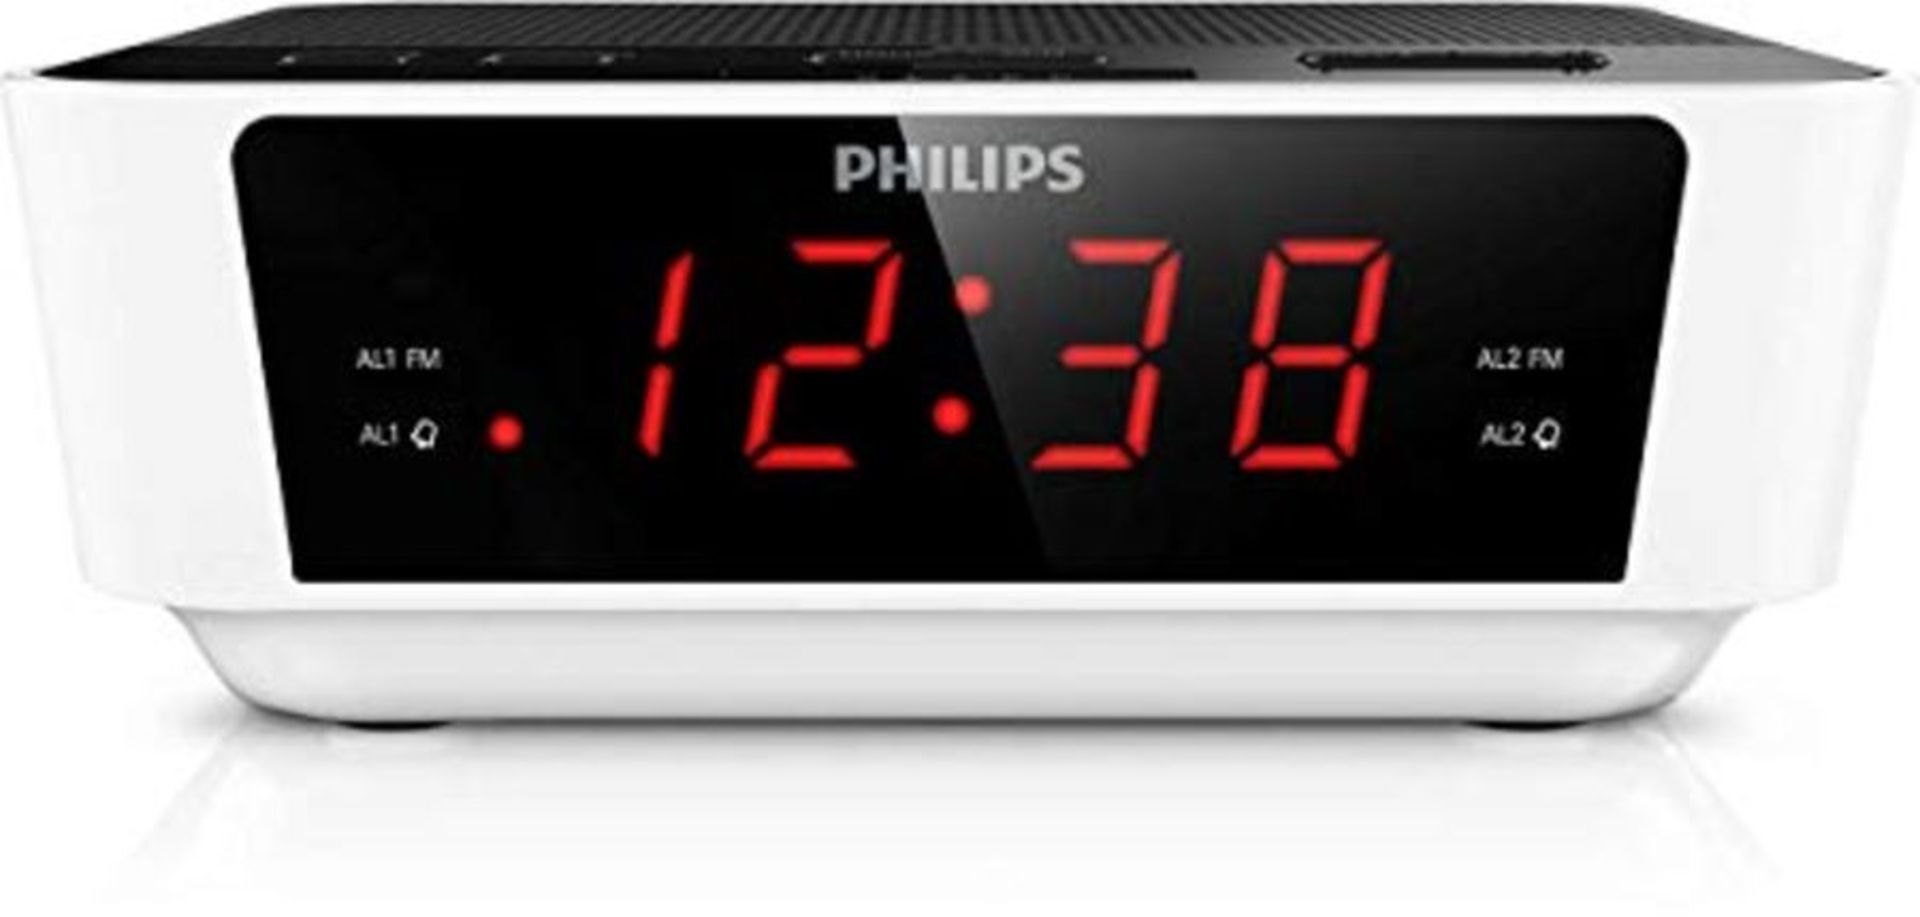 Philips UKW Radioalarm clock AJ3115 UKW white, black